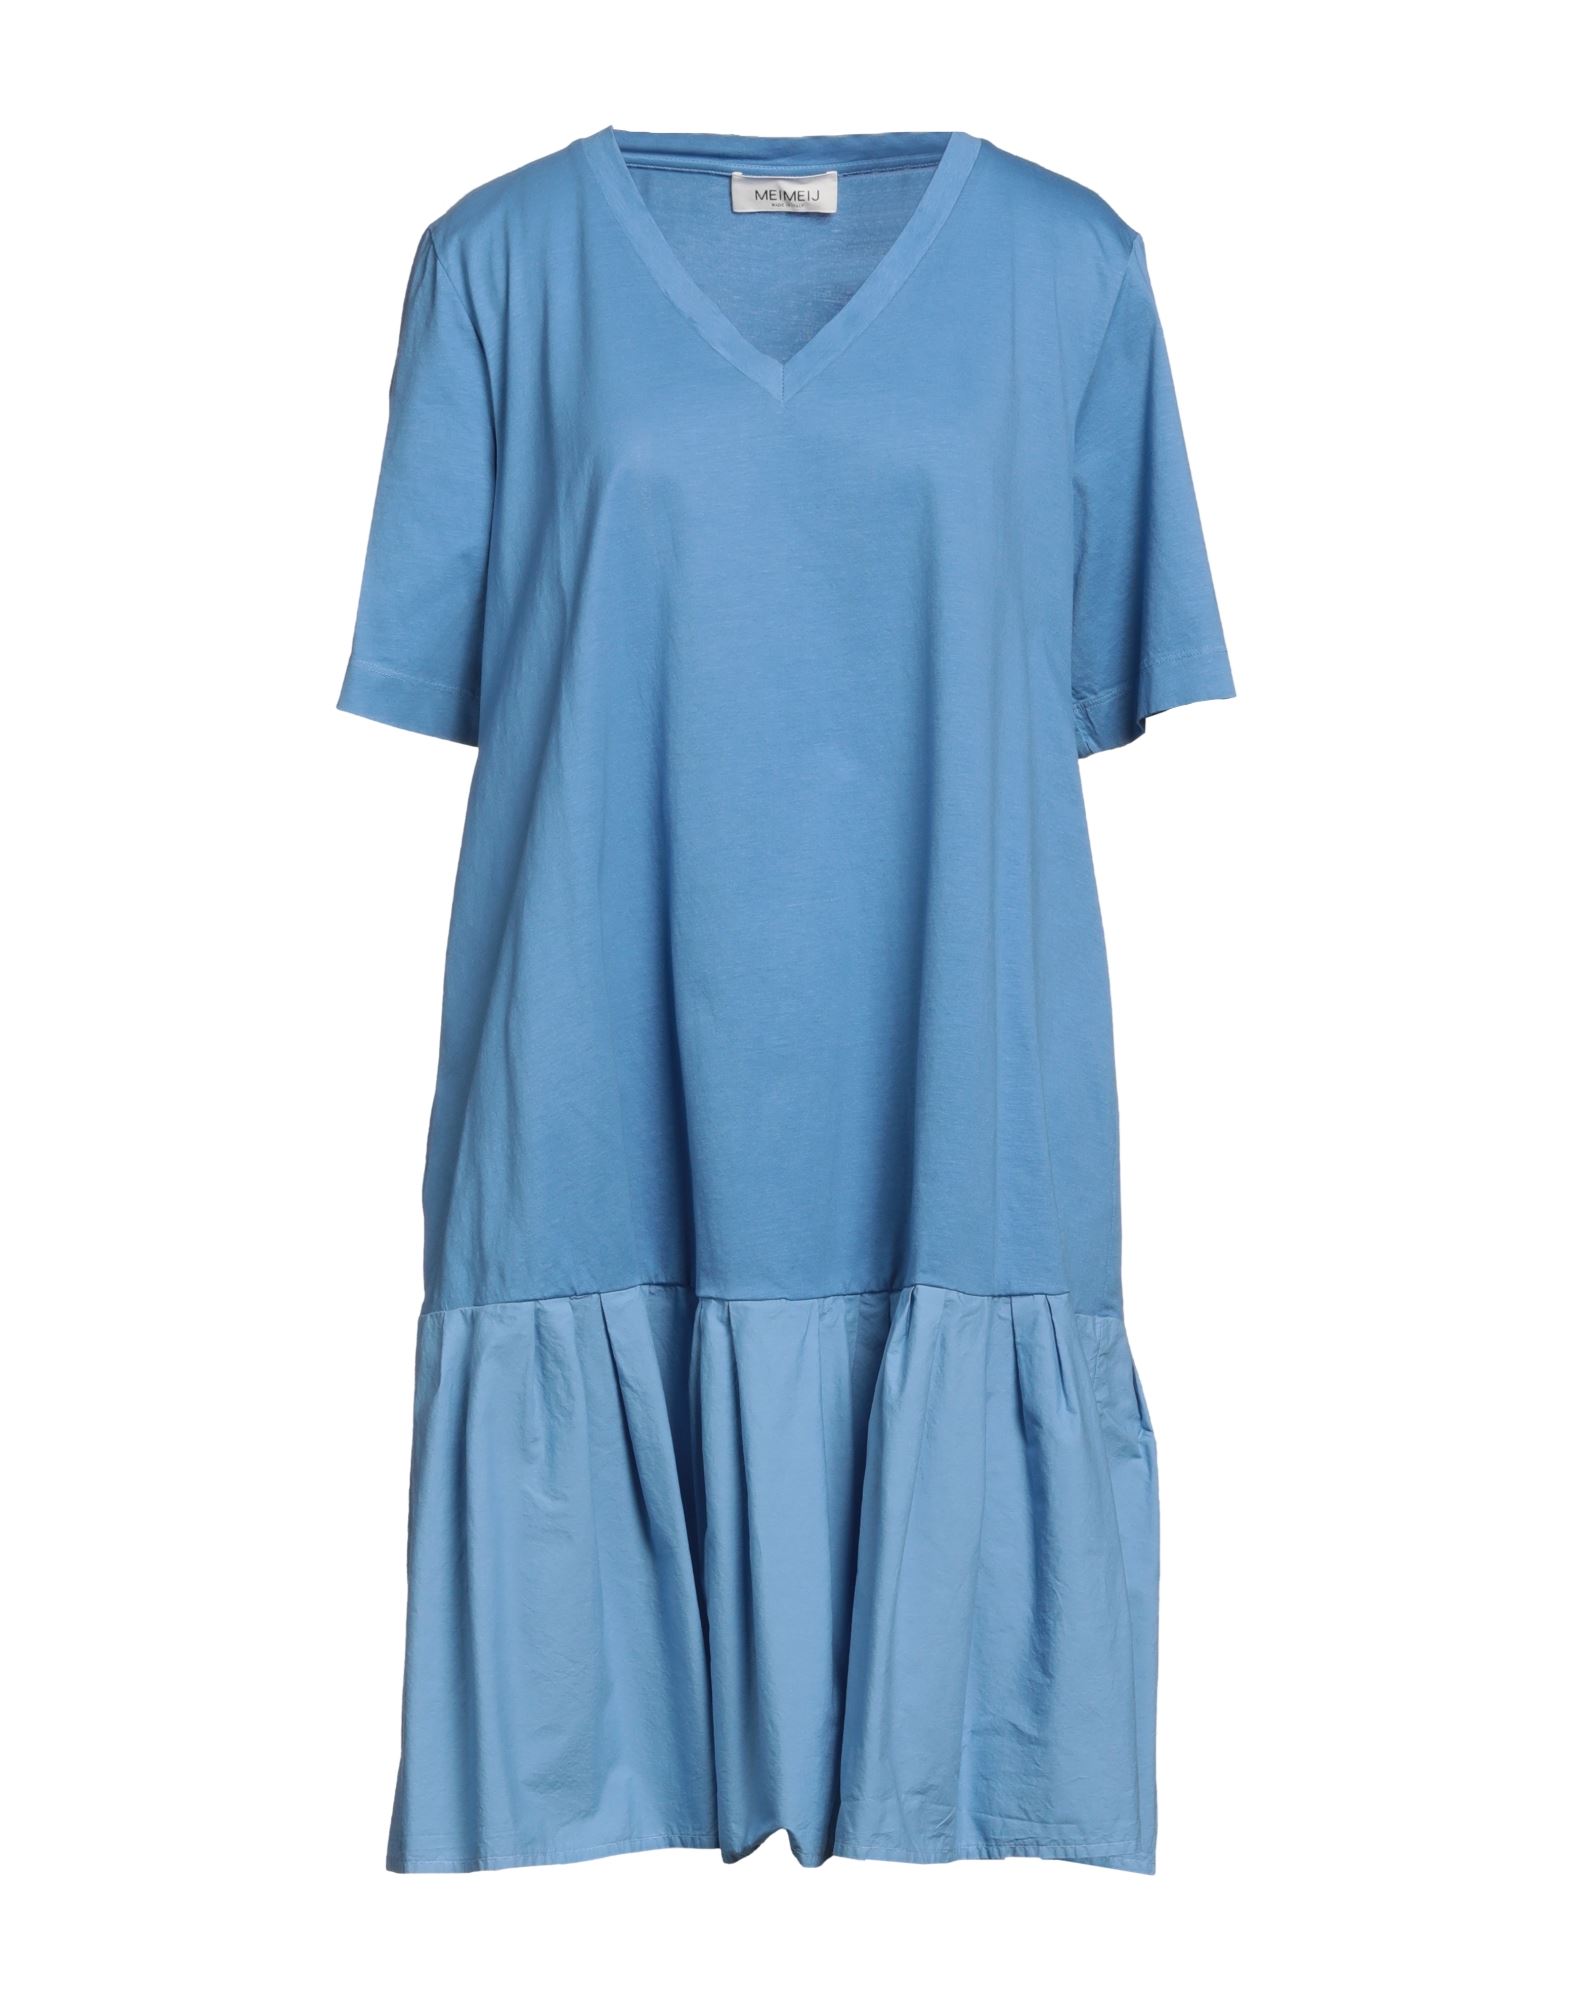 Meimeij Short Dresses In Blue